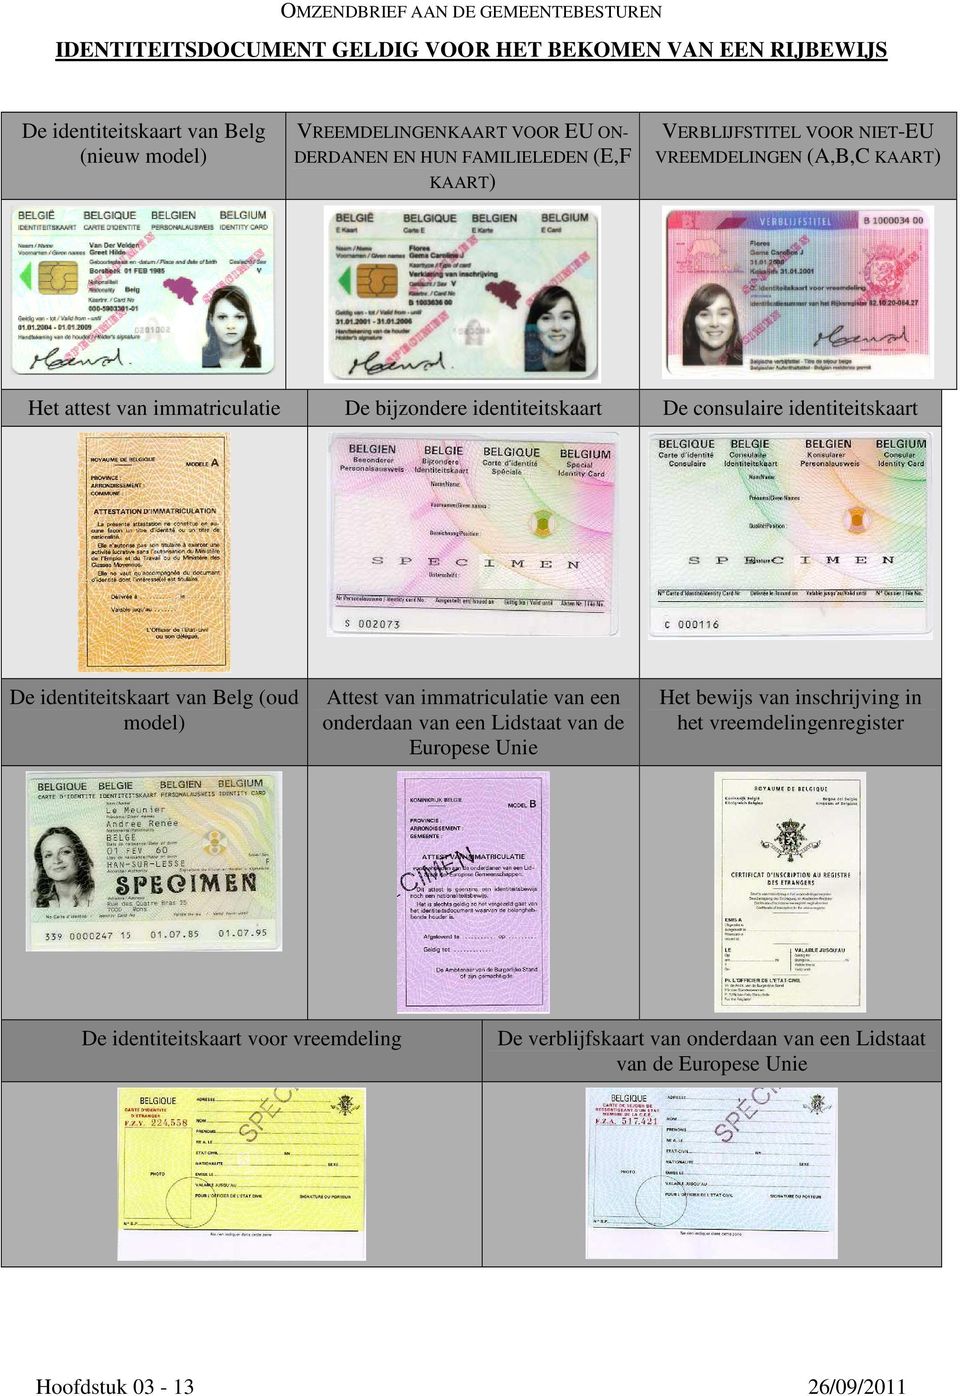 identiteitskaart De identiteitskaart van Belg (oud model) Attest van immatriculatie van een onderdaan van een Lidstaat van de Europese Unie Het bewijs van